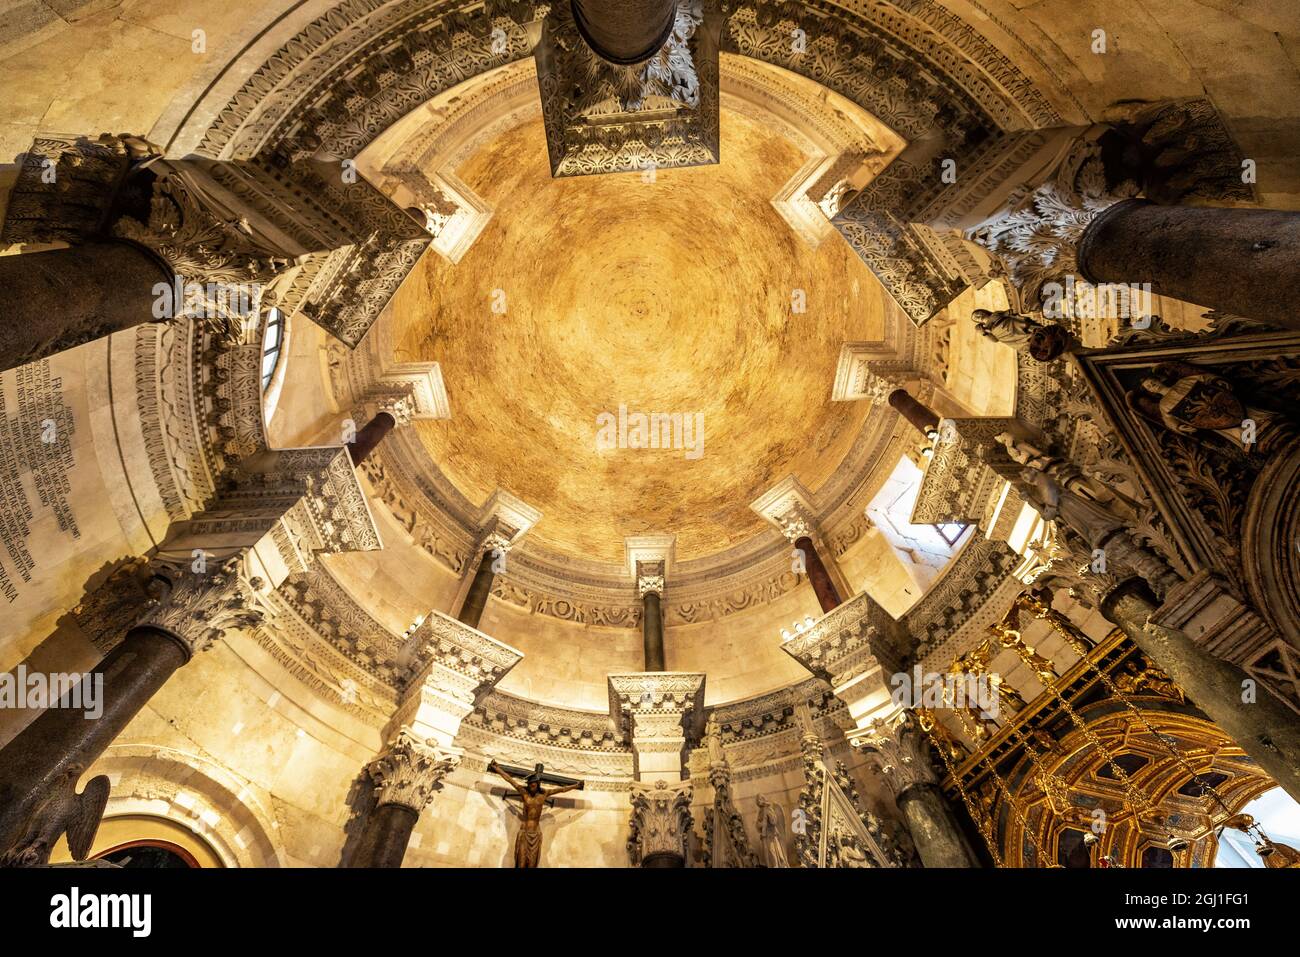 SPLIT, KROATIEN - 18. JUNI 2018: Blick auf die Kuppel der Kathedrale St. Domnius in Split, Kroatien Stockfoto